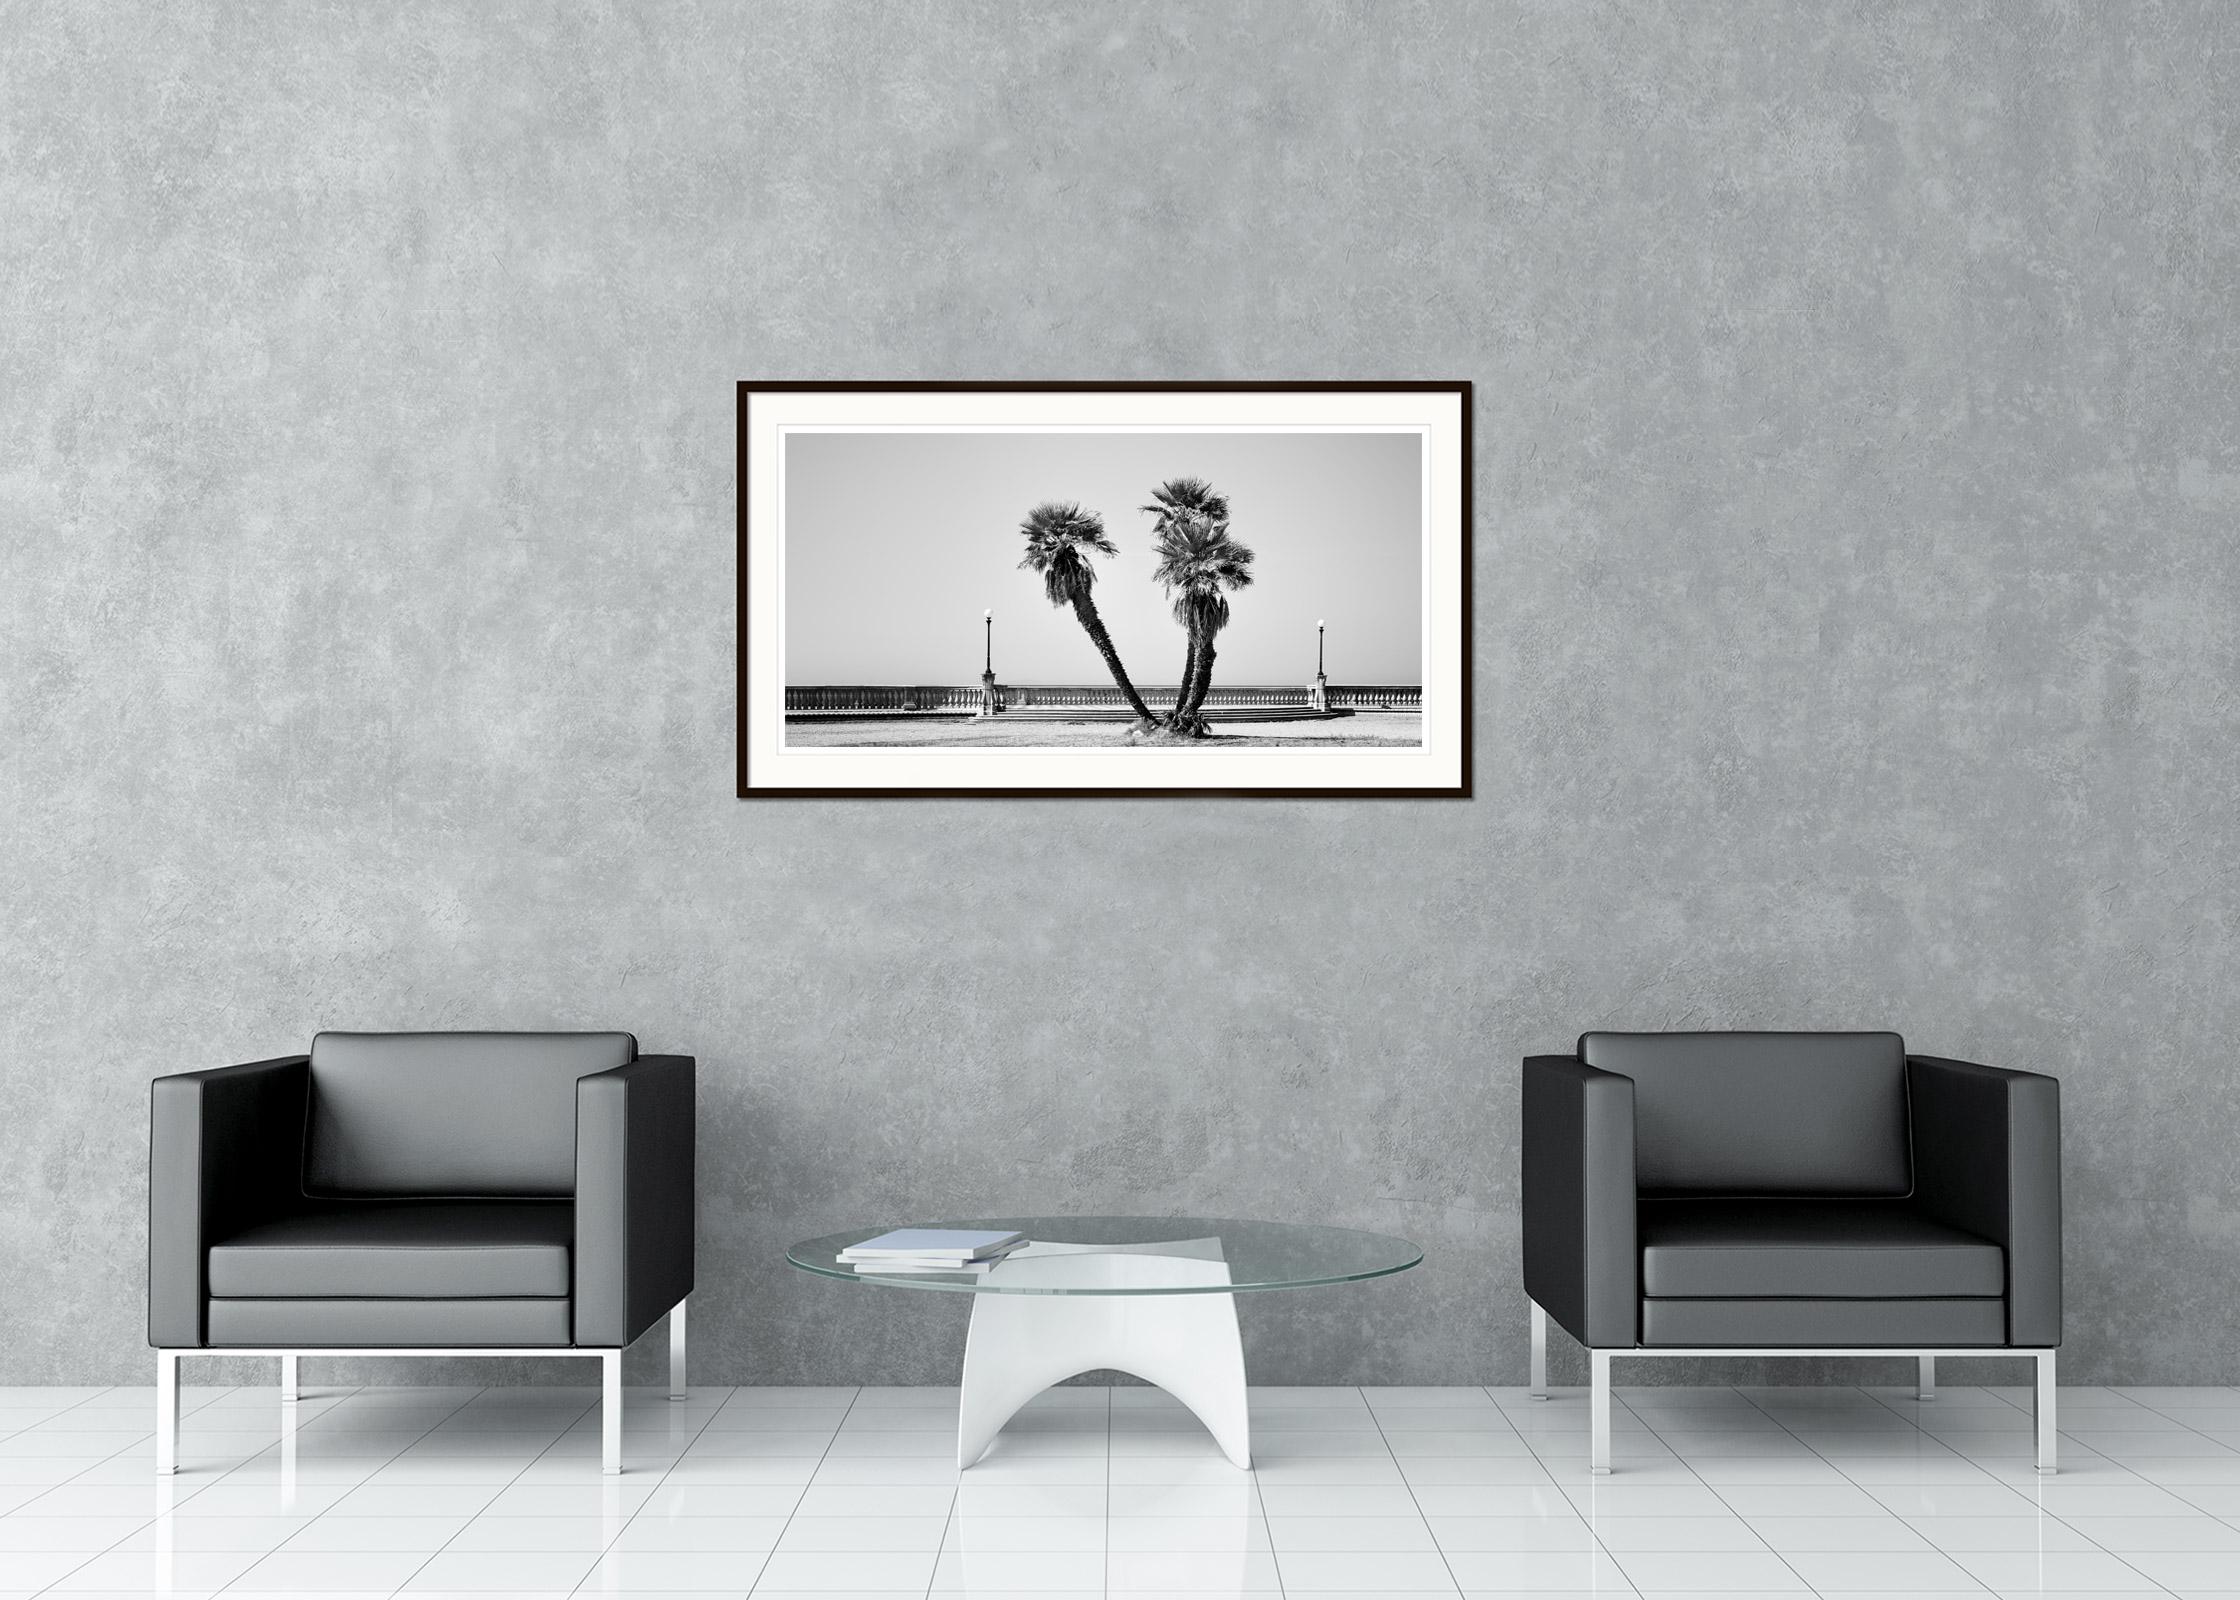 Schwarz-Weiß-Panorama-Landschaftsfotografie. Palmen auf der beeindruckenden Promenade Terrazza Mascagni in der Toskana, Italien. Pigmenttintendruck in einer limitierten Auflage von 8 Exemplaren. Alle Drucke von Gerald Berghammer werden auf